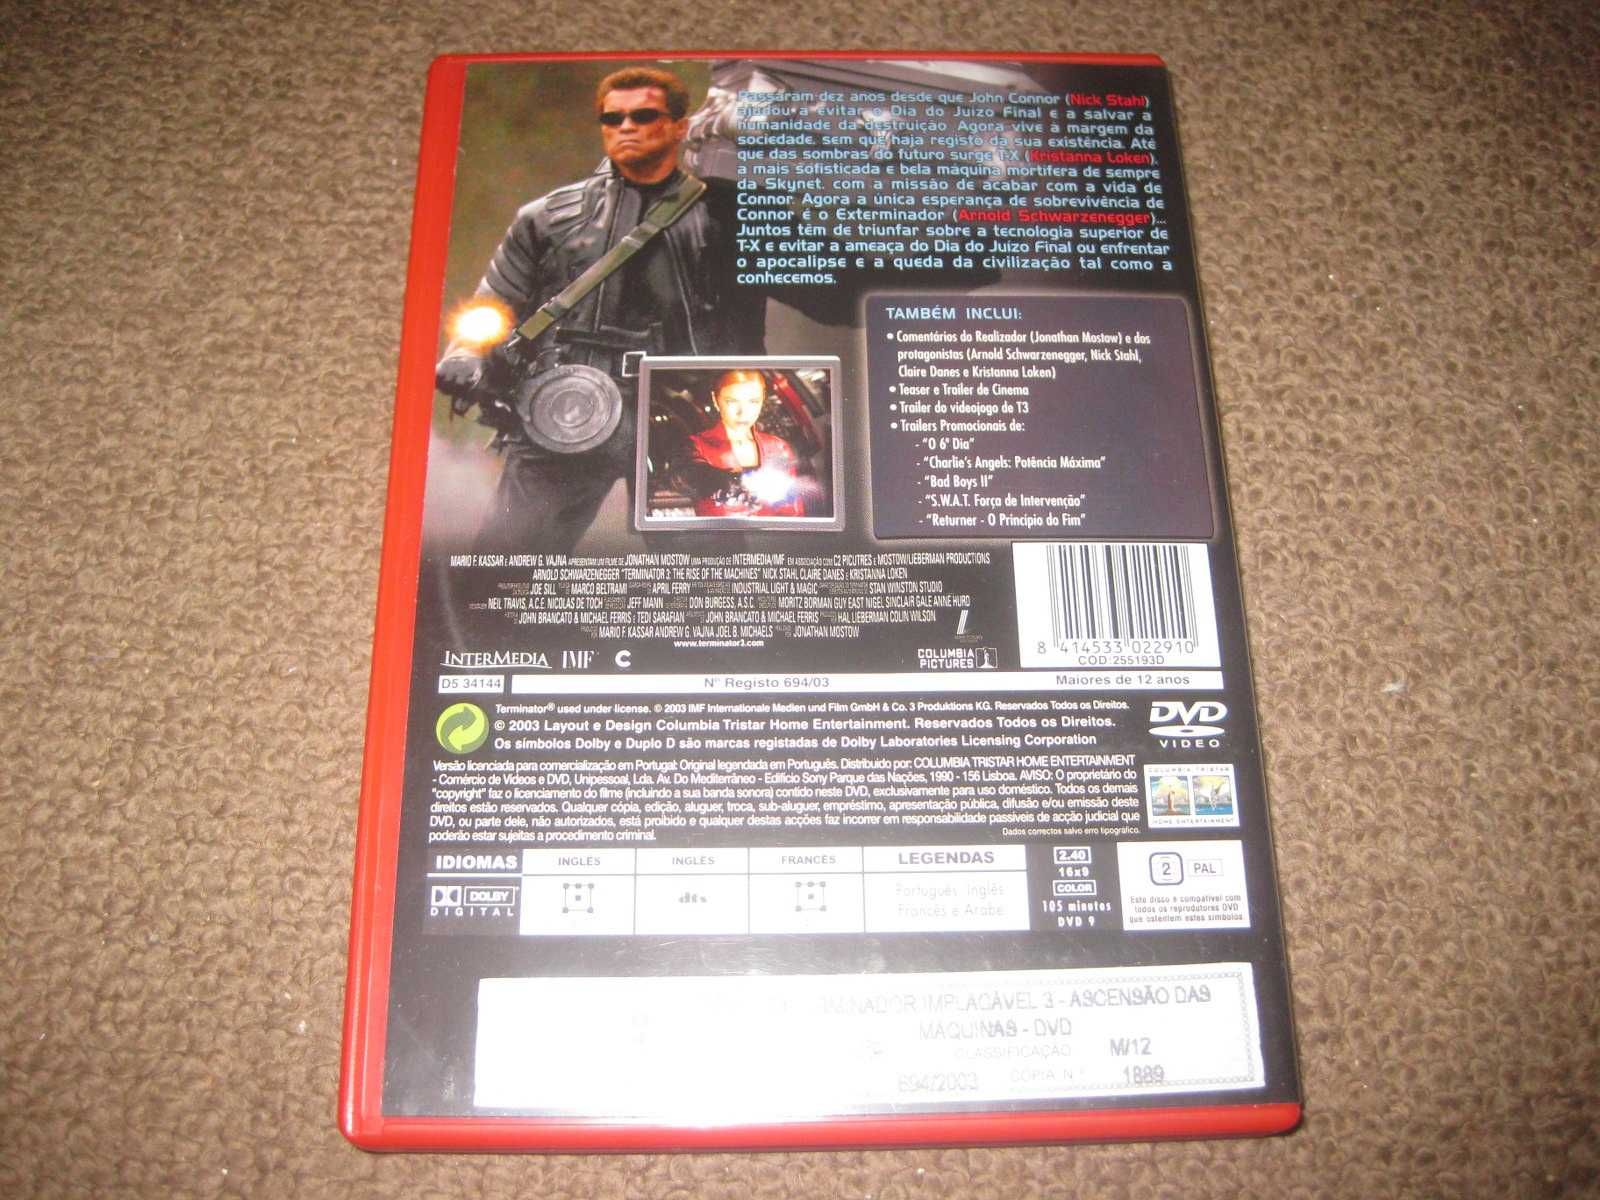 DVD "Exterminador Implacável 3- Ascensão das Máquinas"